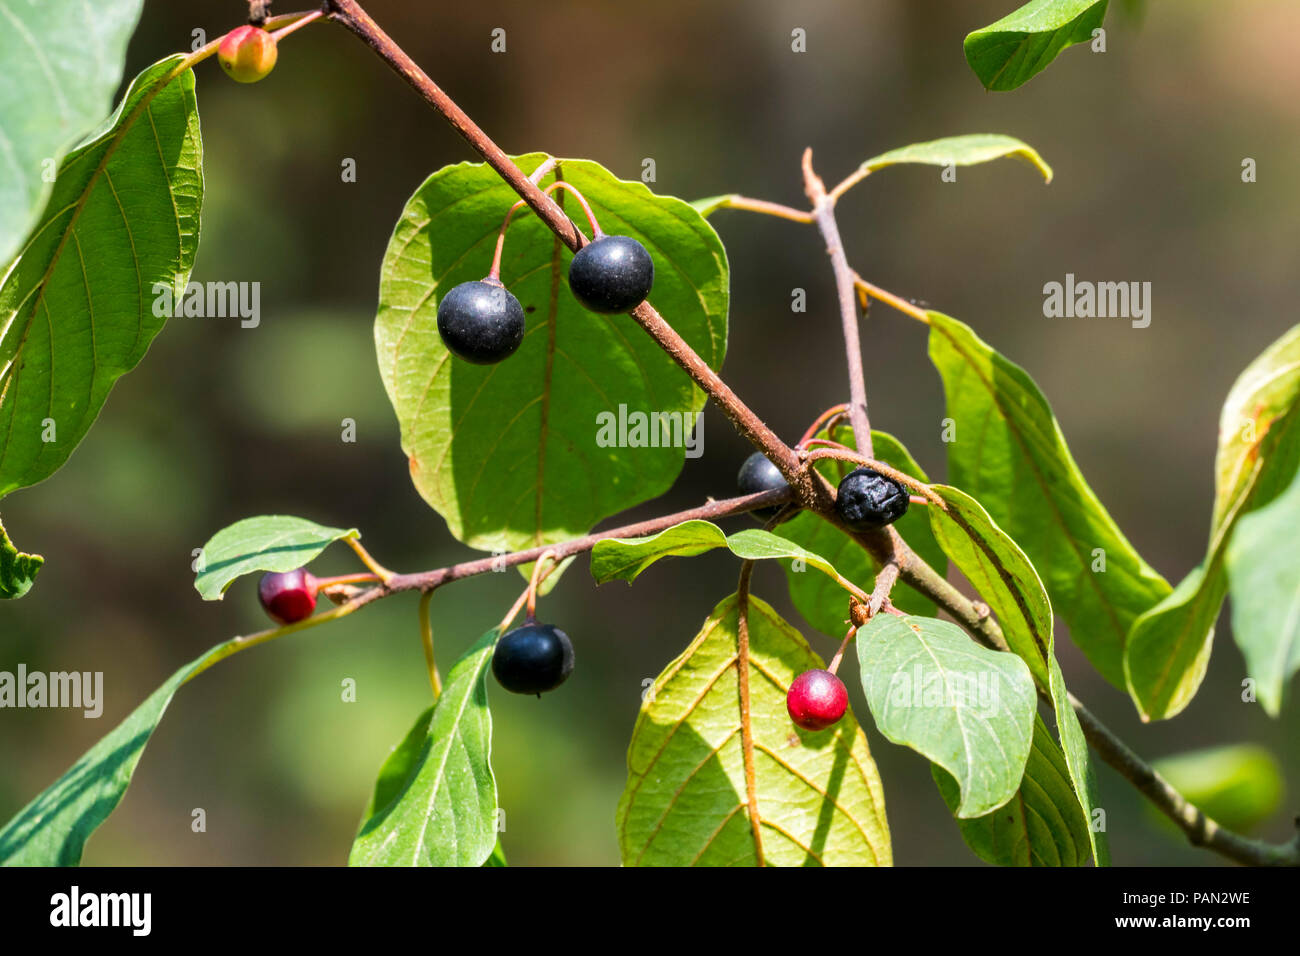 Wild black cherry / rum cherry / mountain black cherry (Prunus serotina) close-up of leaves and ripe and unripe berries in summer Stock Photo